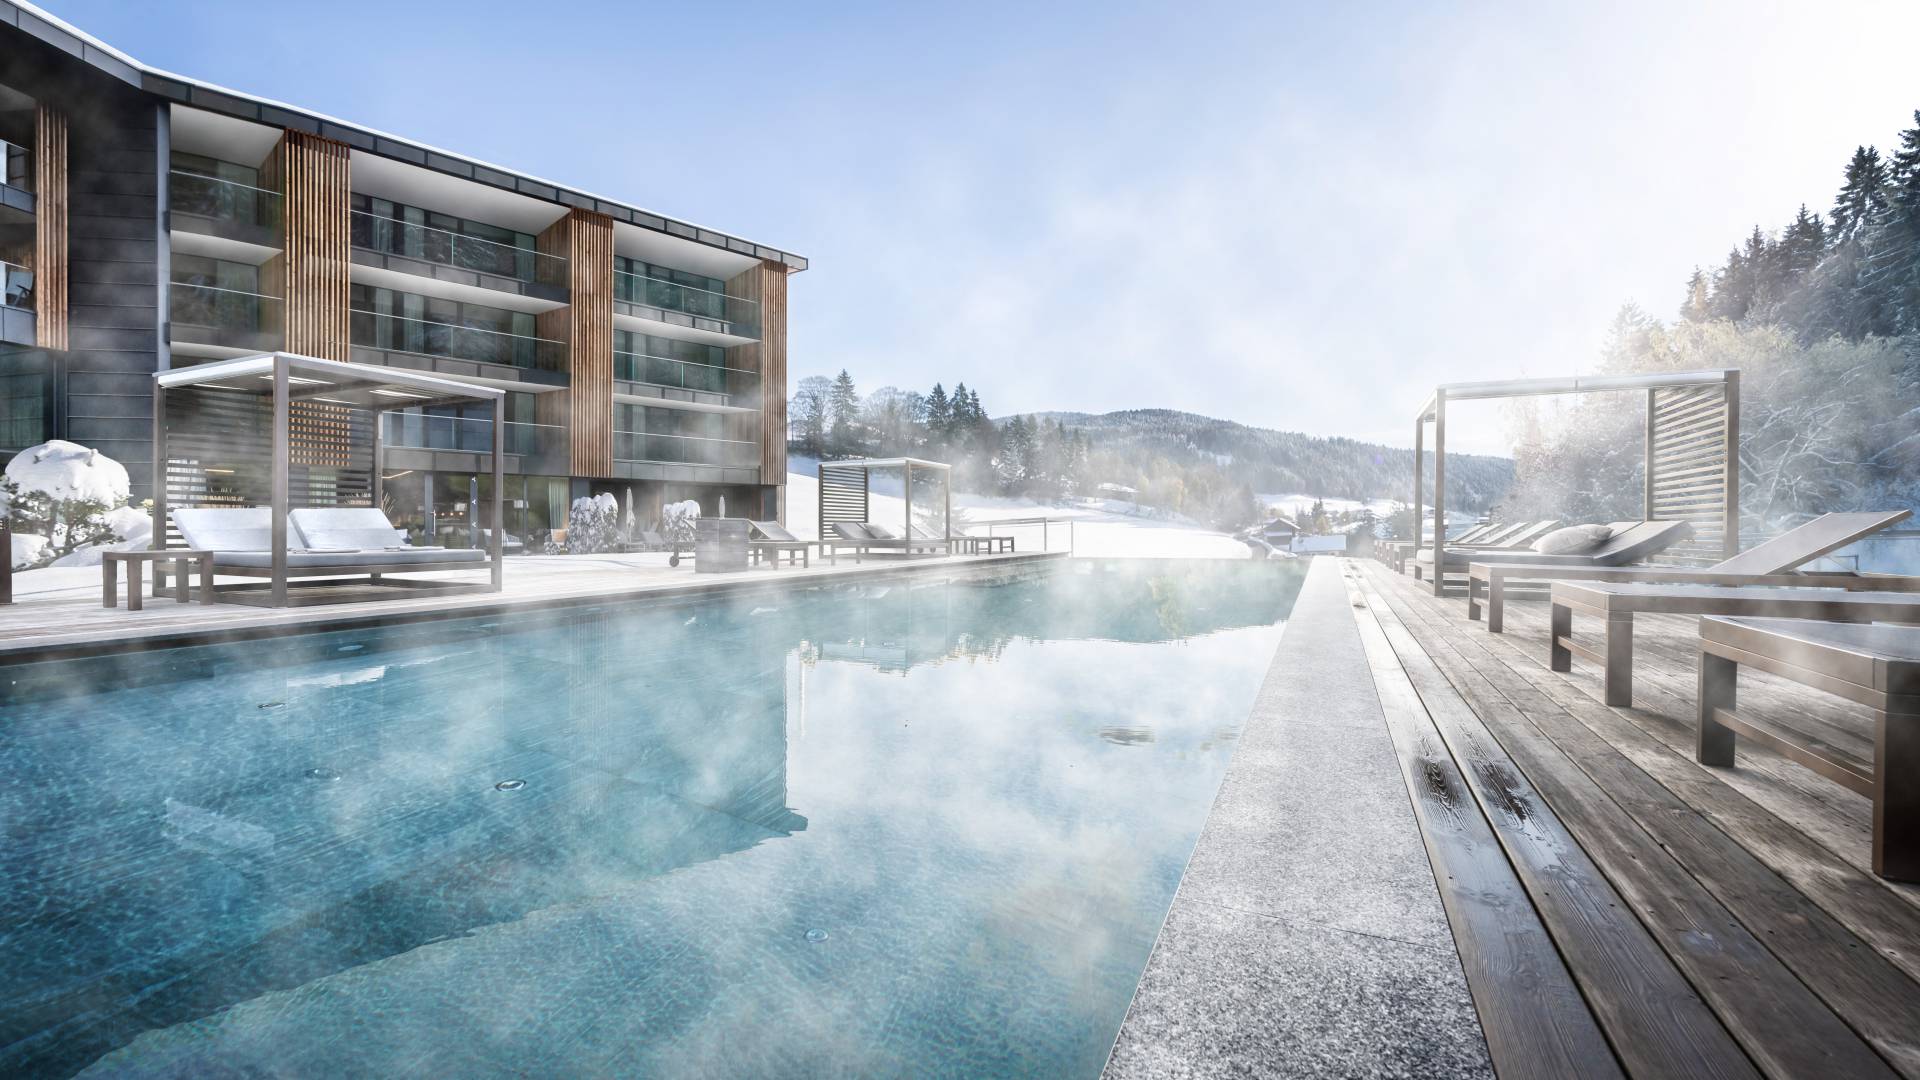 Aussenpool von einem Wellnesshotel in Südtirol im Winter